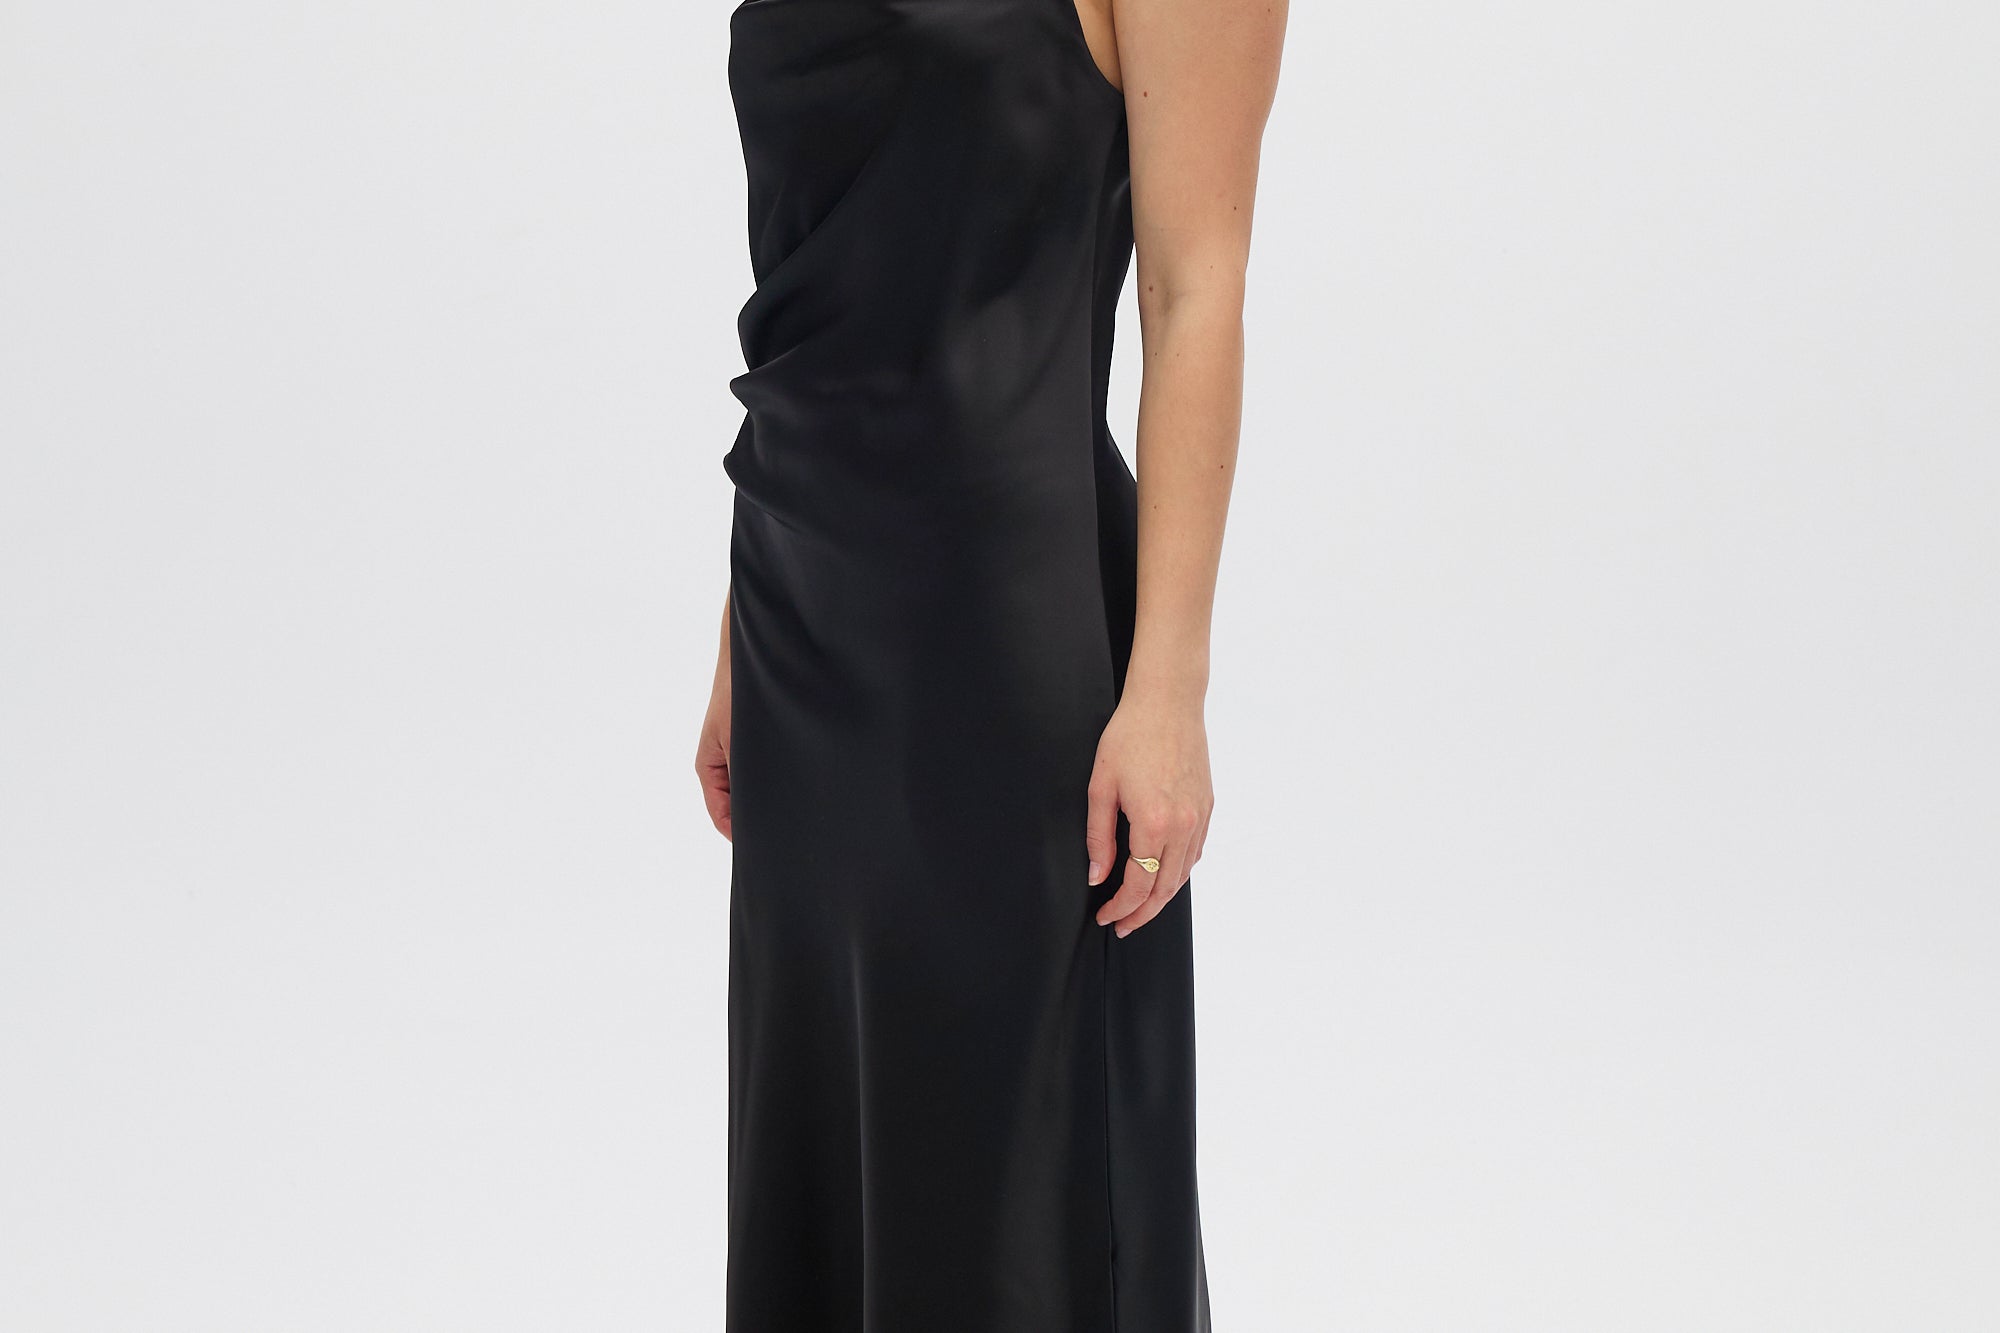 Black Asymmetrical Draped Dress side